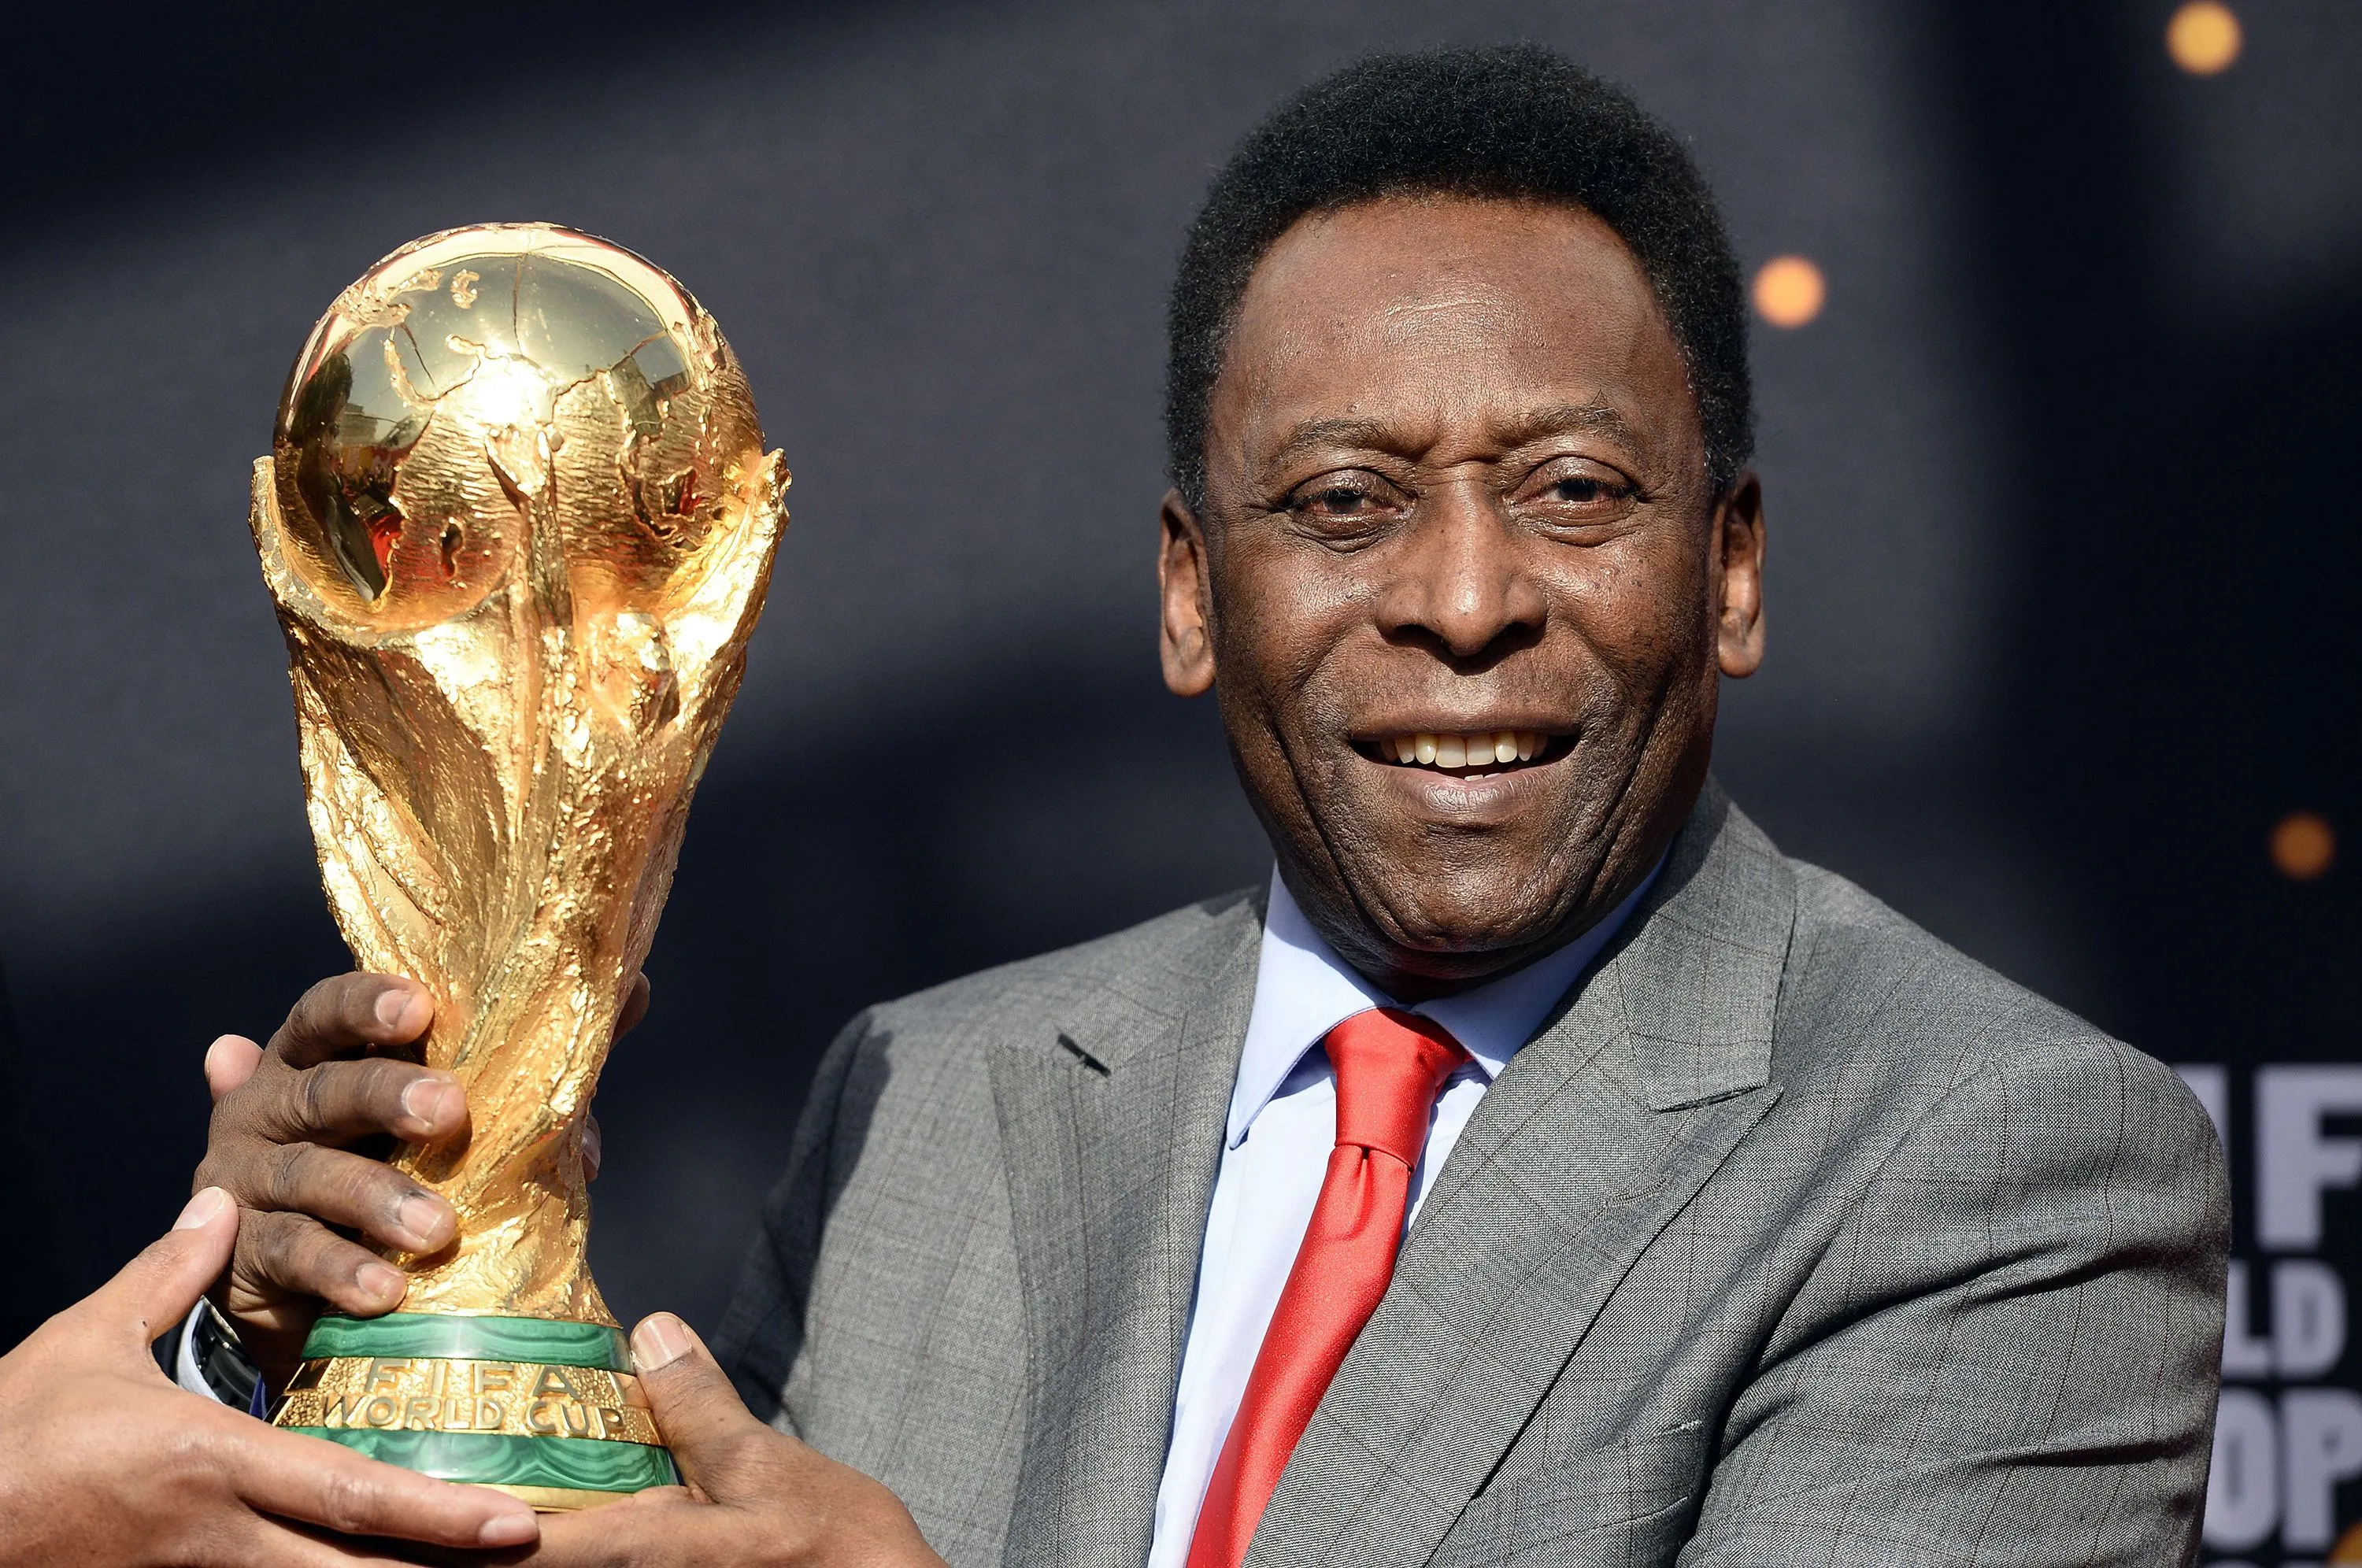 La carrera de Pelé, el mayor ídolo futbolista de Brasil